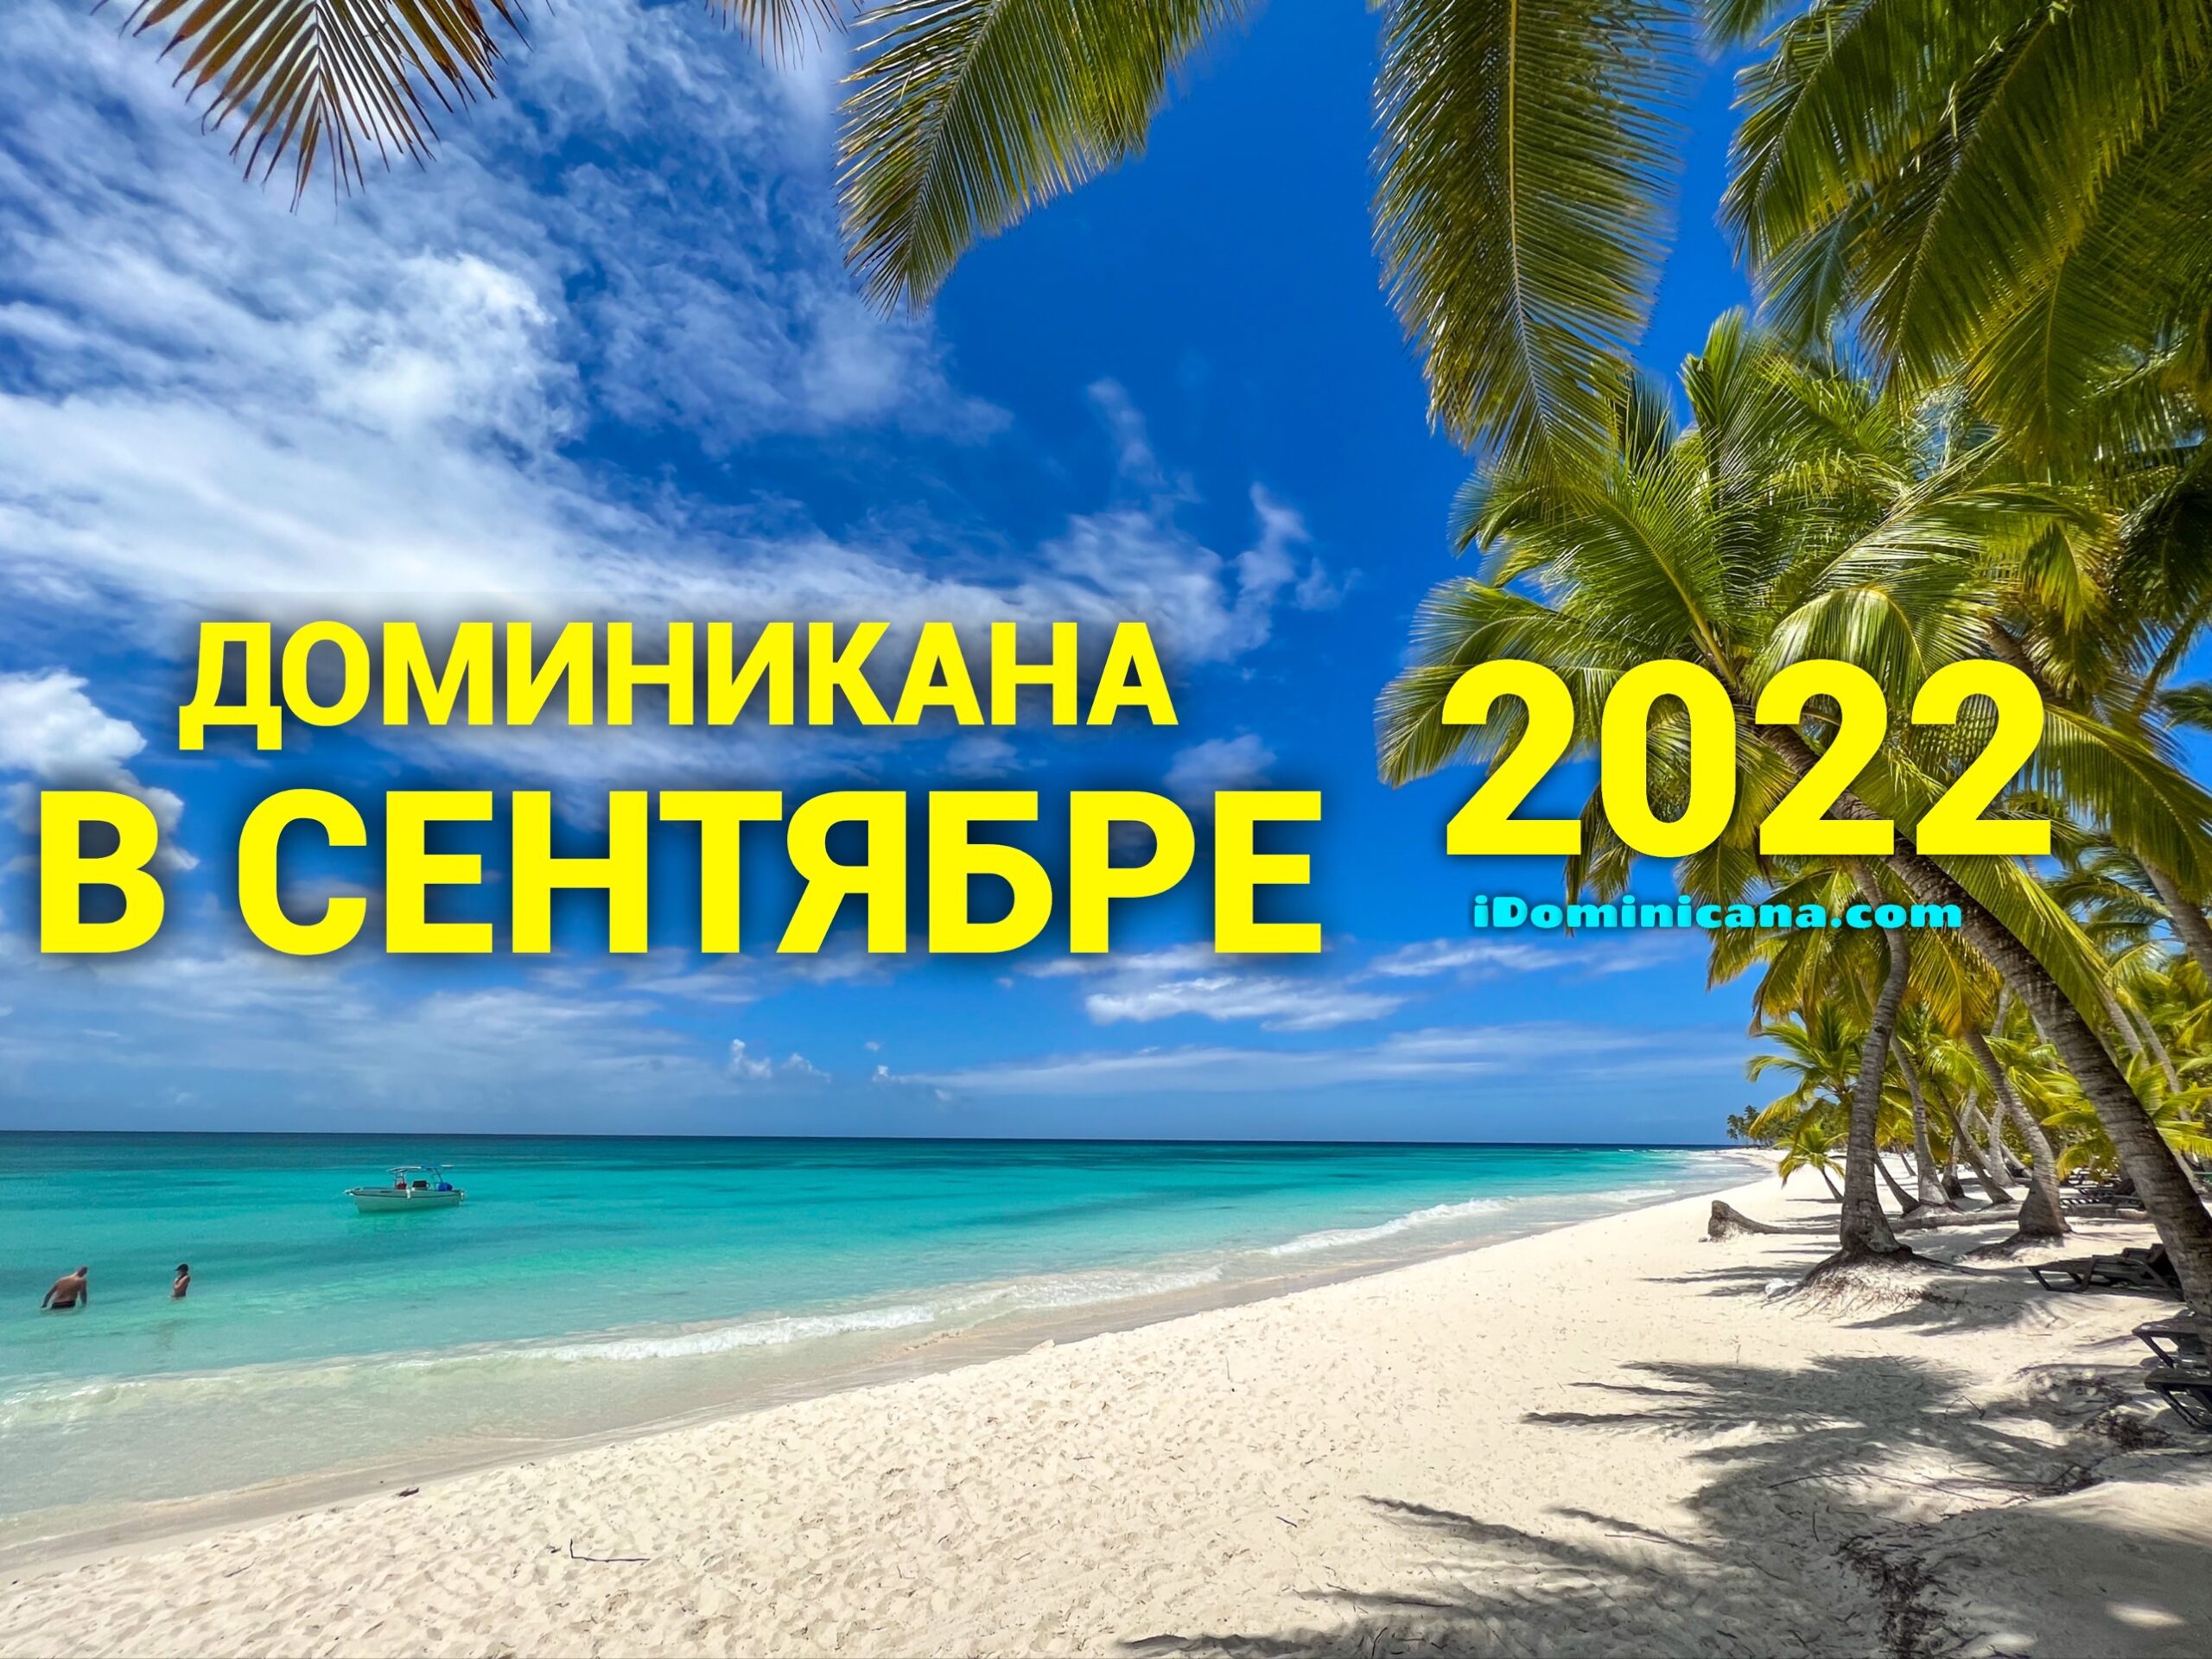 миникана в сентябре 2022: погода, пляжи, что посмотреть